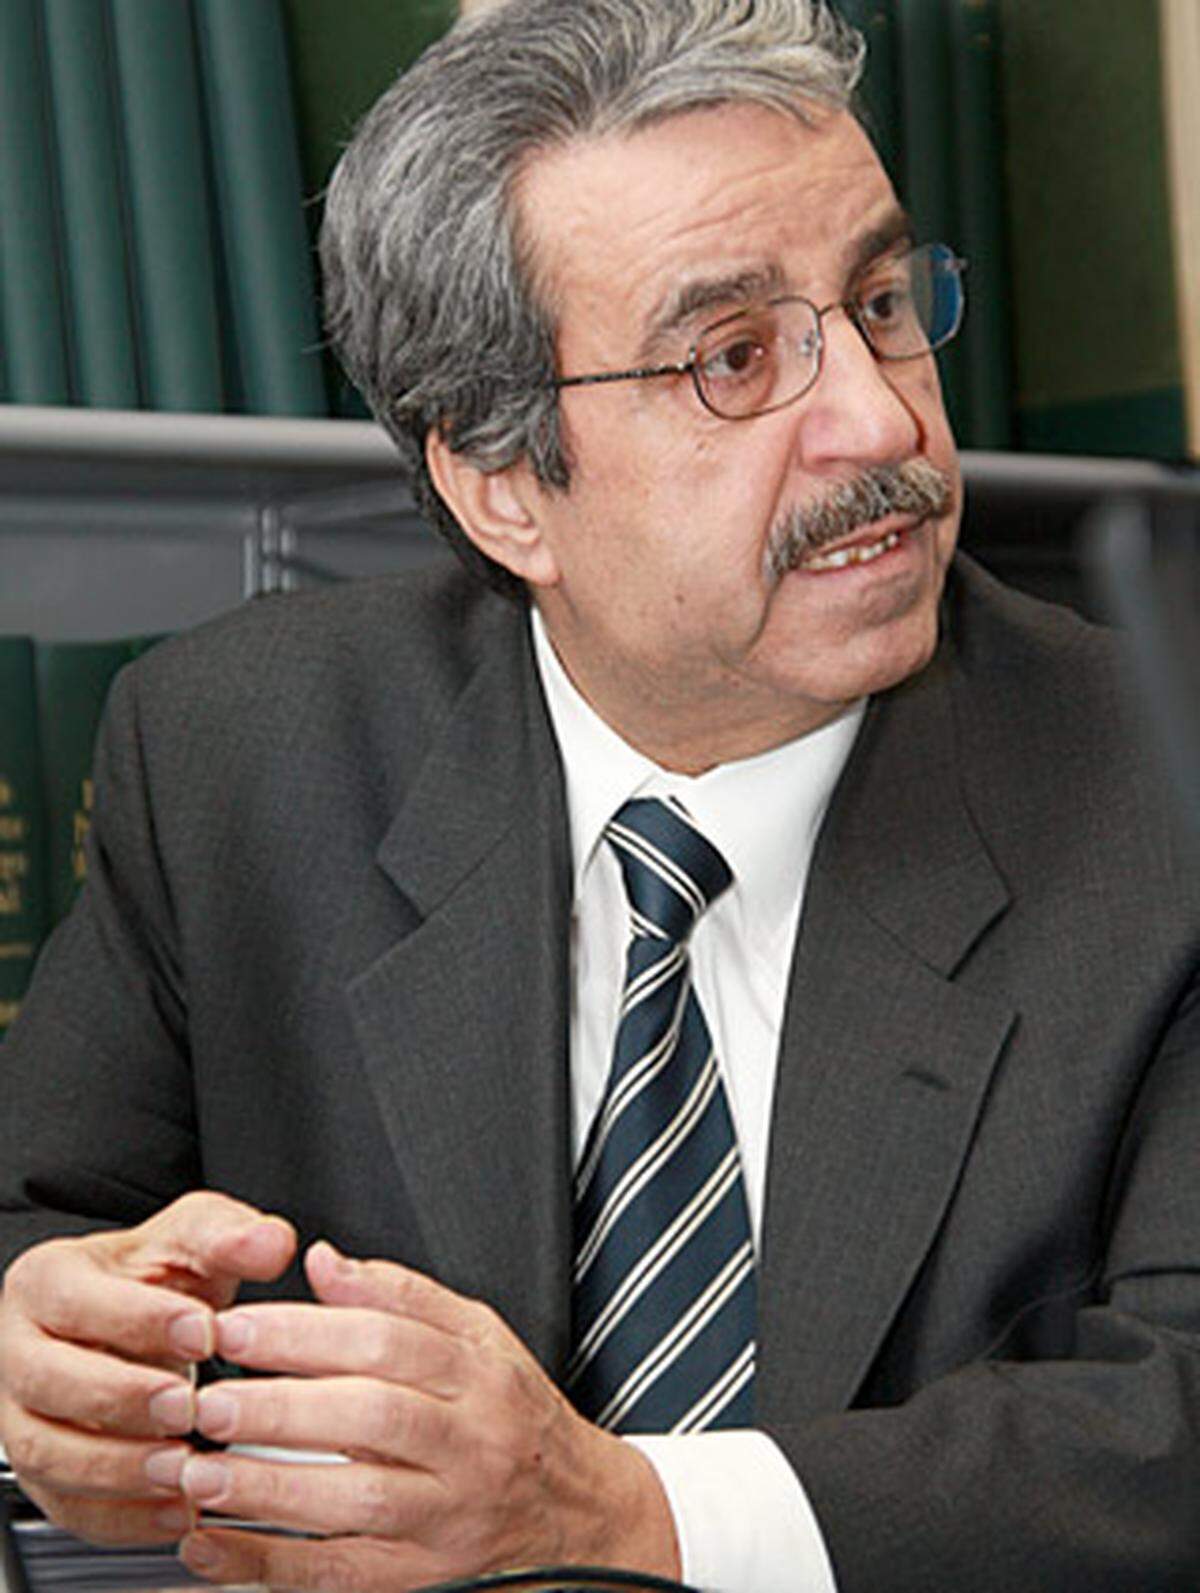 Am Freitag, 16. Jänner, war Zuheir Elwazer, der offizielle Vertreter der PLO in Österreich und damit inoffizieller Botschafter Palästinas, zu Gast im DiePresse.com-Chat.